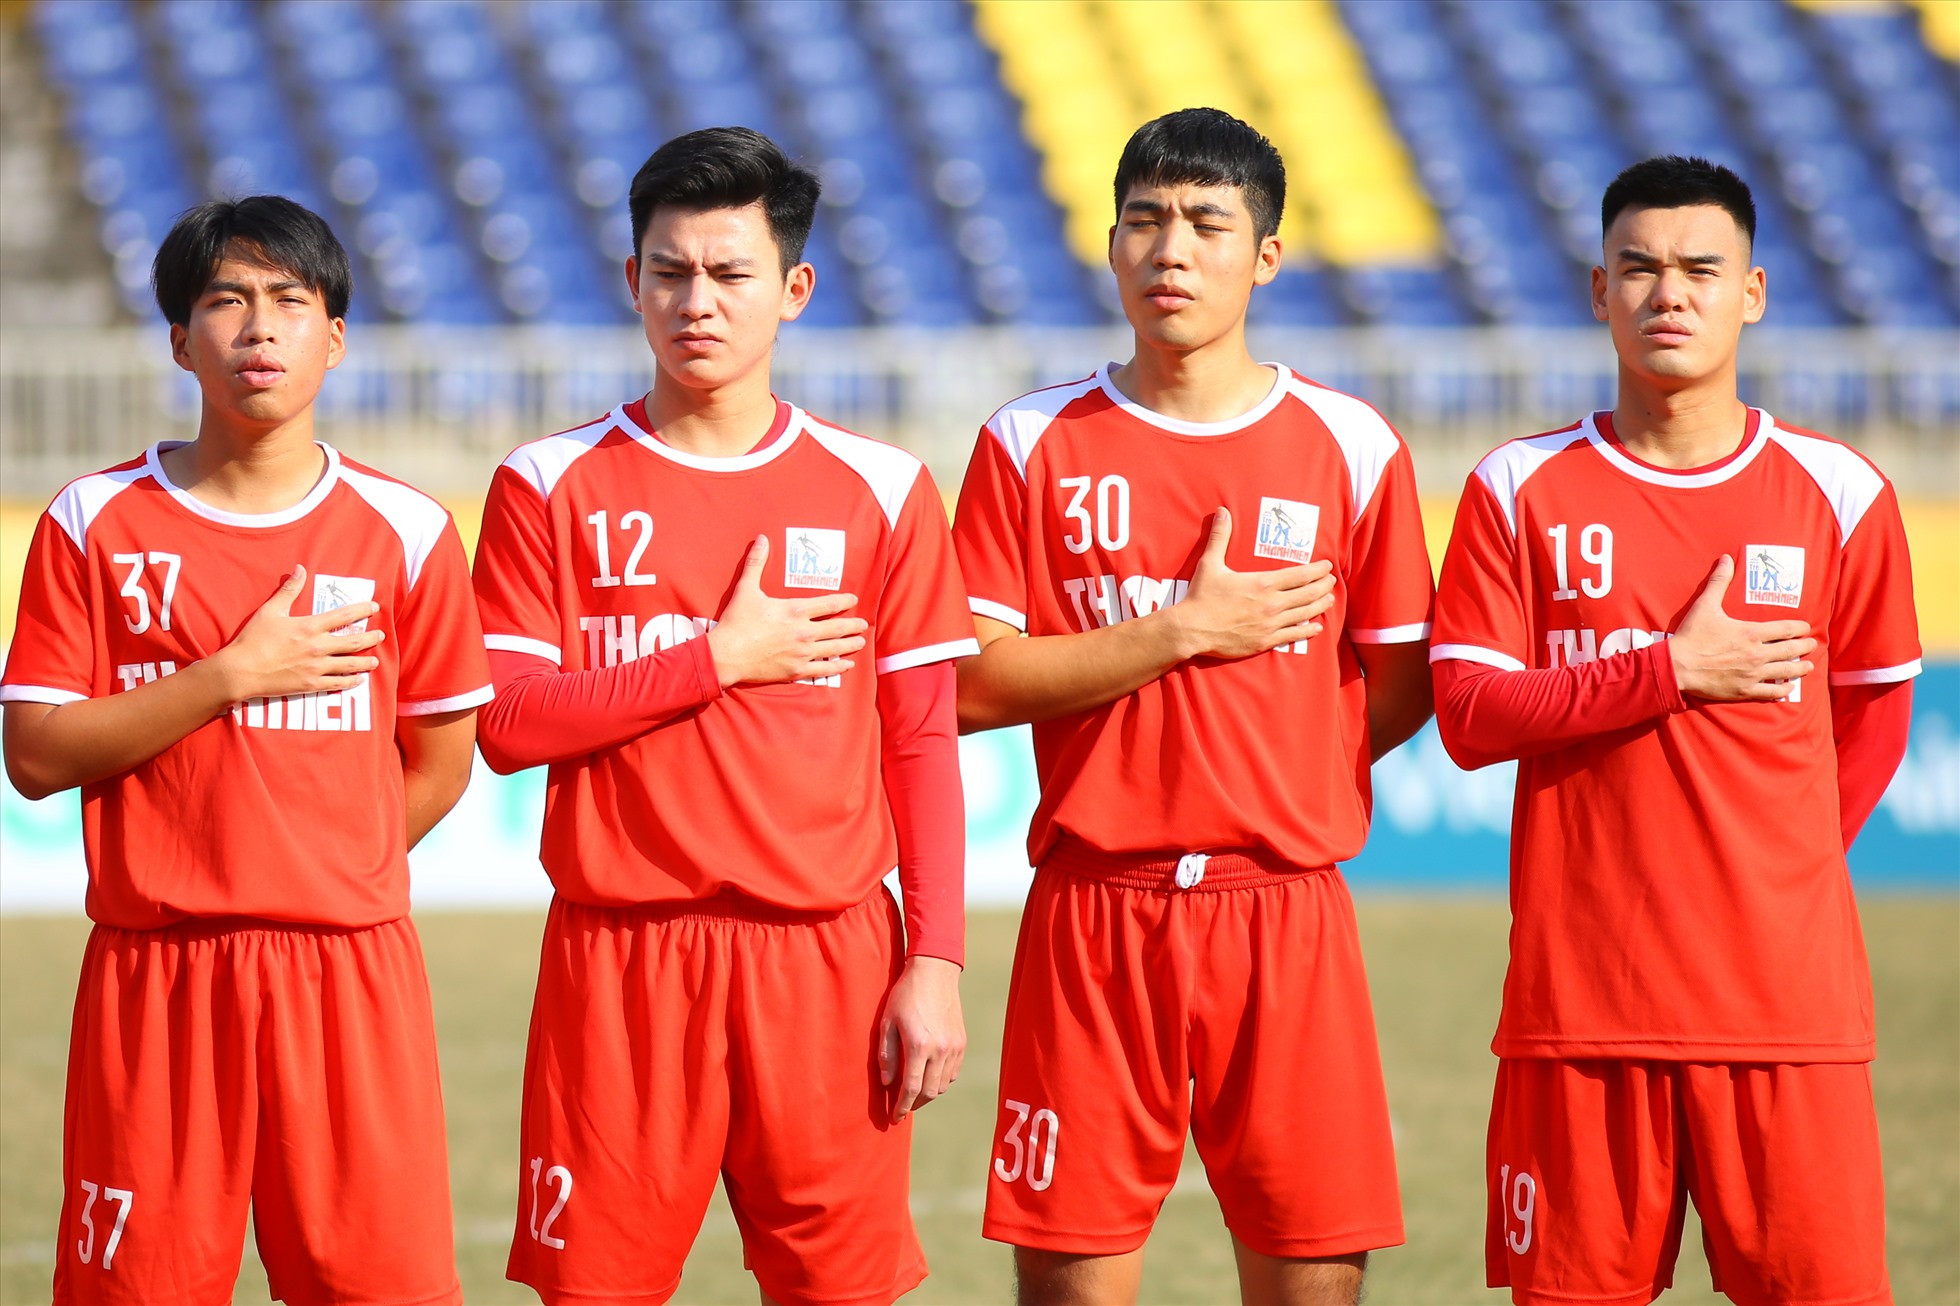 Chiều 25.12, U21 Viettel và U21 Đà Nẵng đối đầu nhau trong trận tứ kết đầu tiên của giải U21 Quốc gia 2022. Hậu vệ Phan Tuấn Tài (số 12) tiếp tục được tin tưởng điền tên vào đội hình xuất phát trận đấu này.